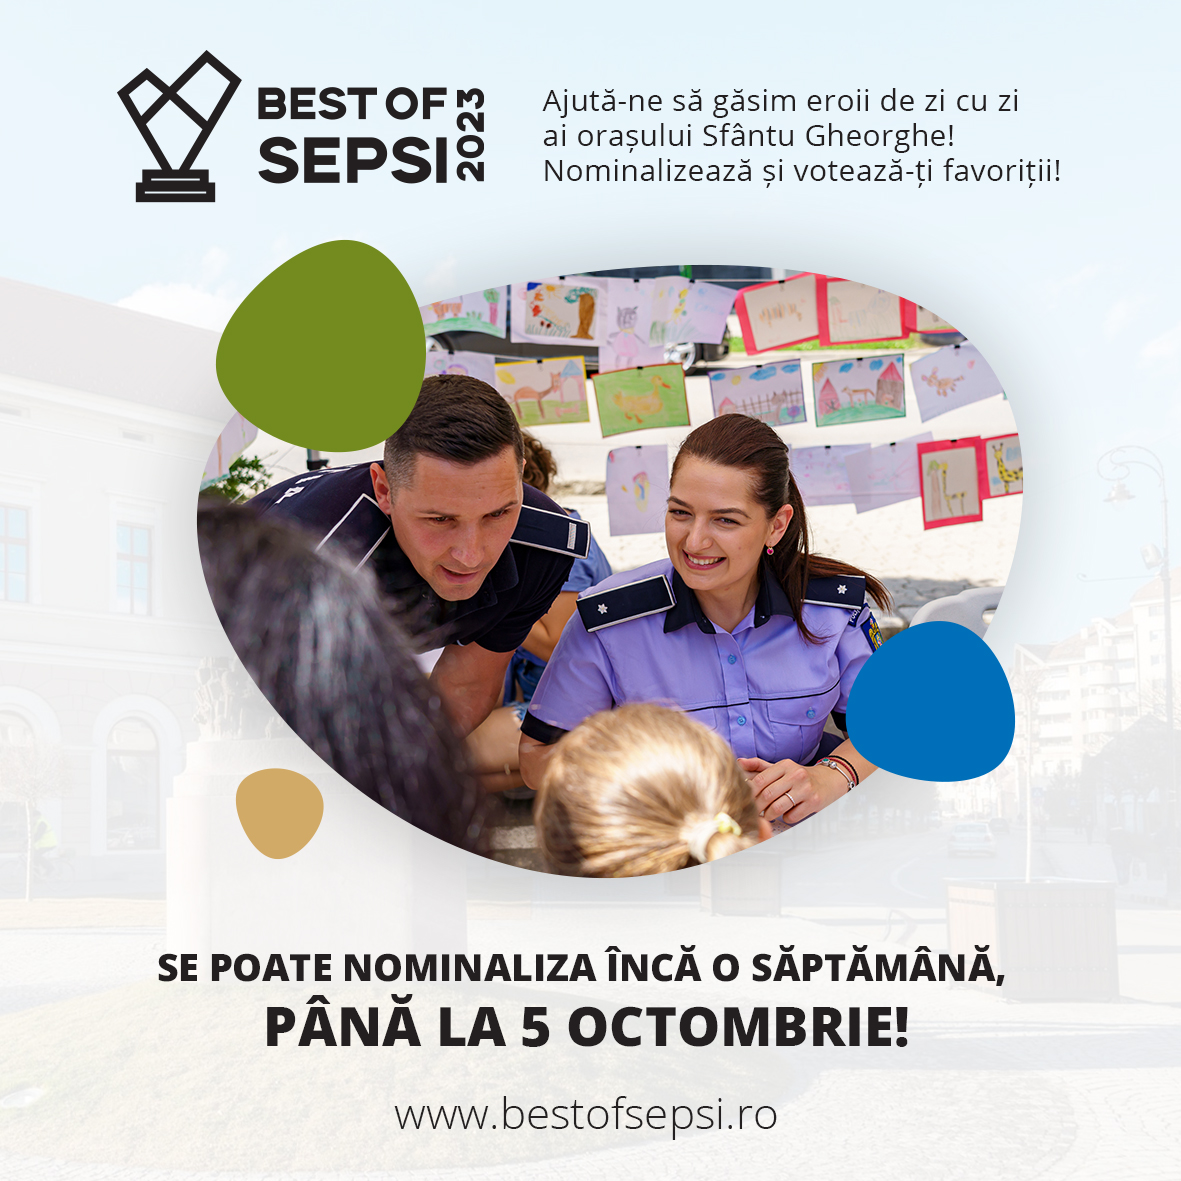 Peste 1.200 de nominalizări au fost făcute în campania Best of Sepsi